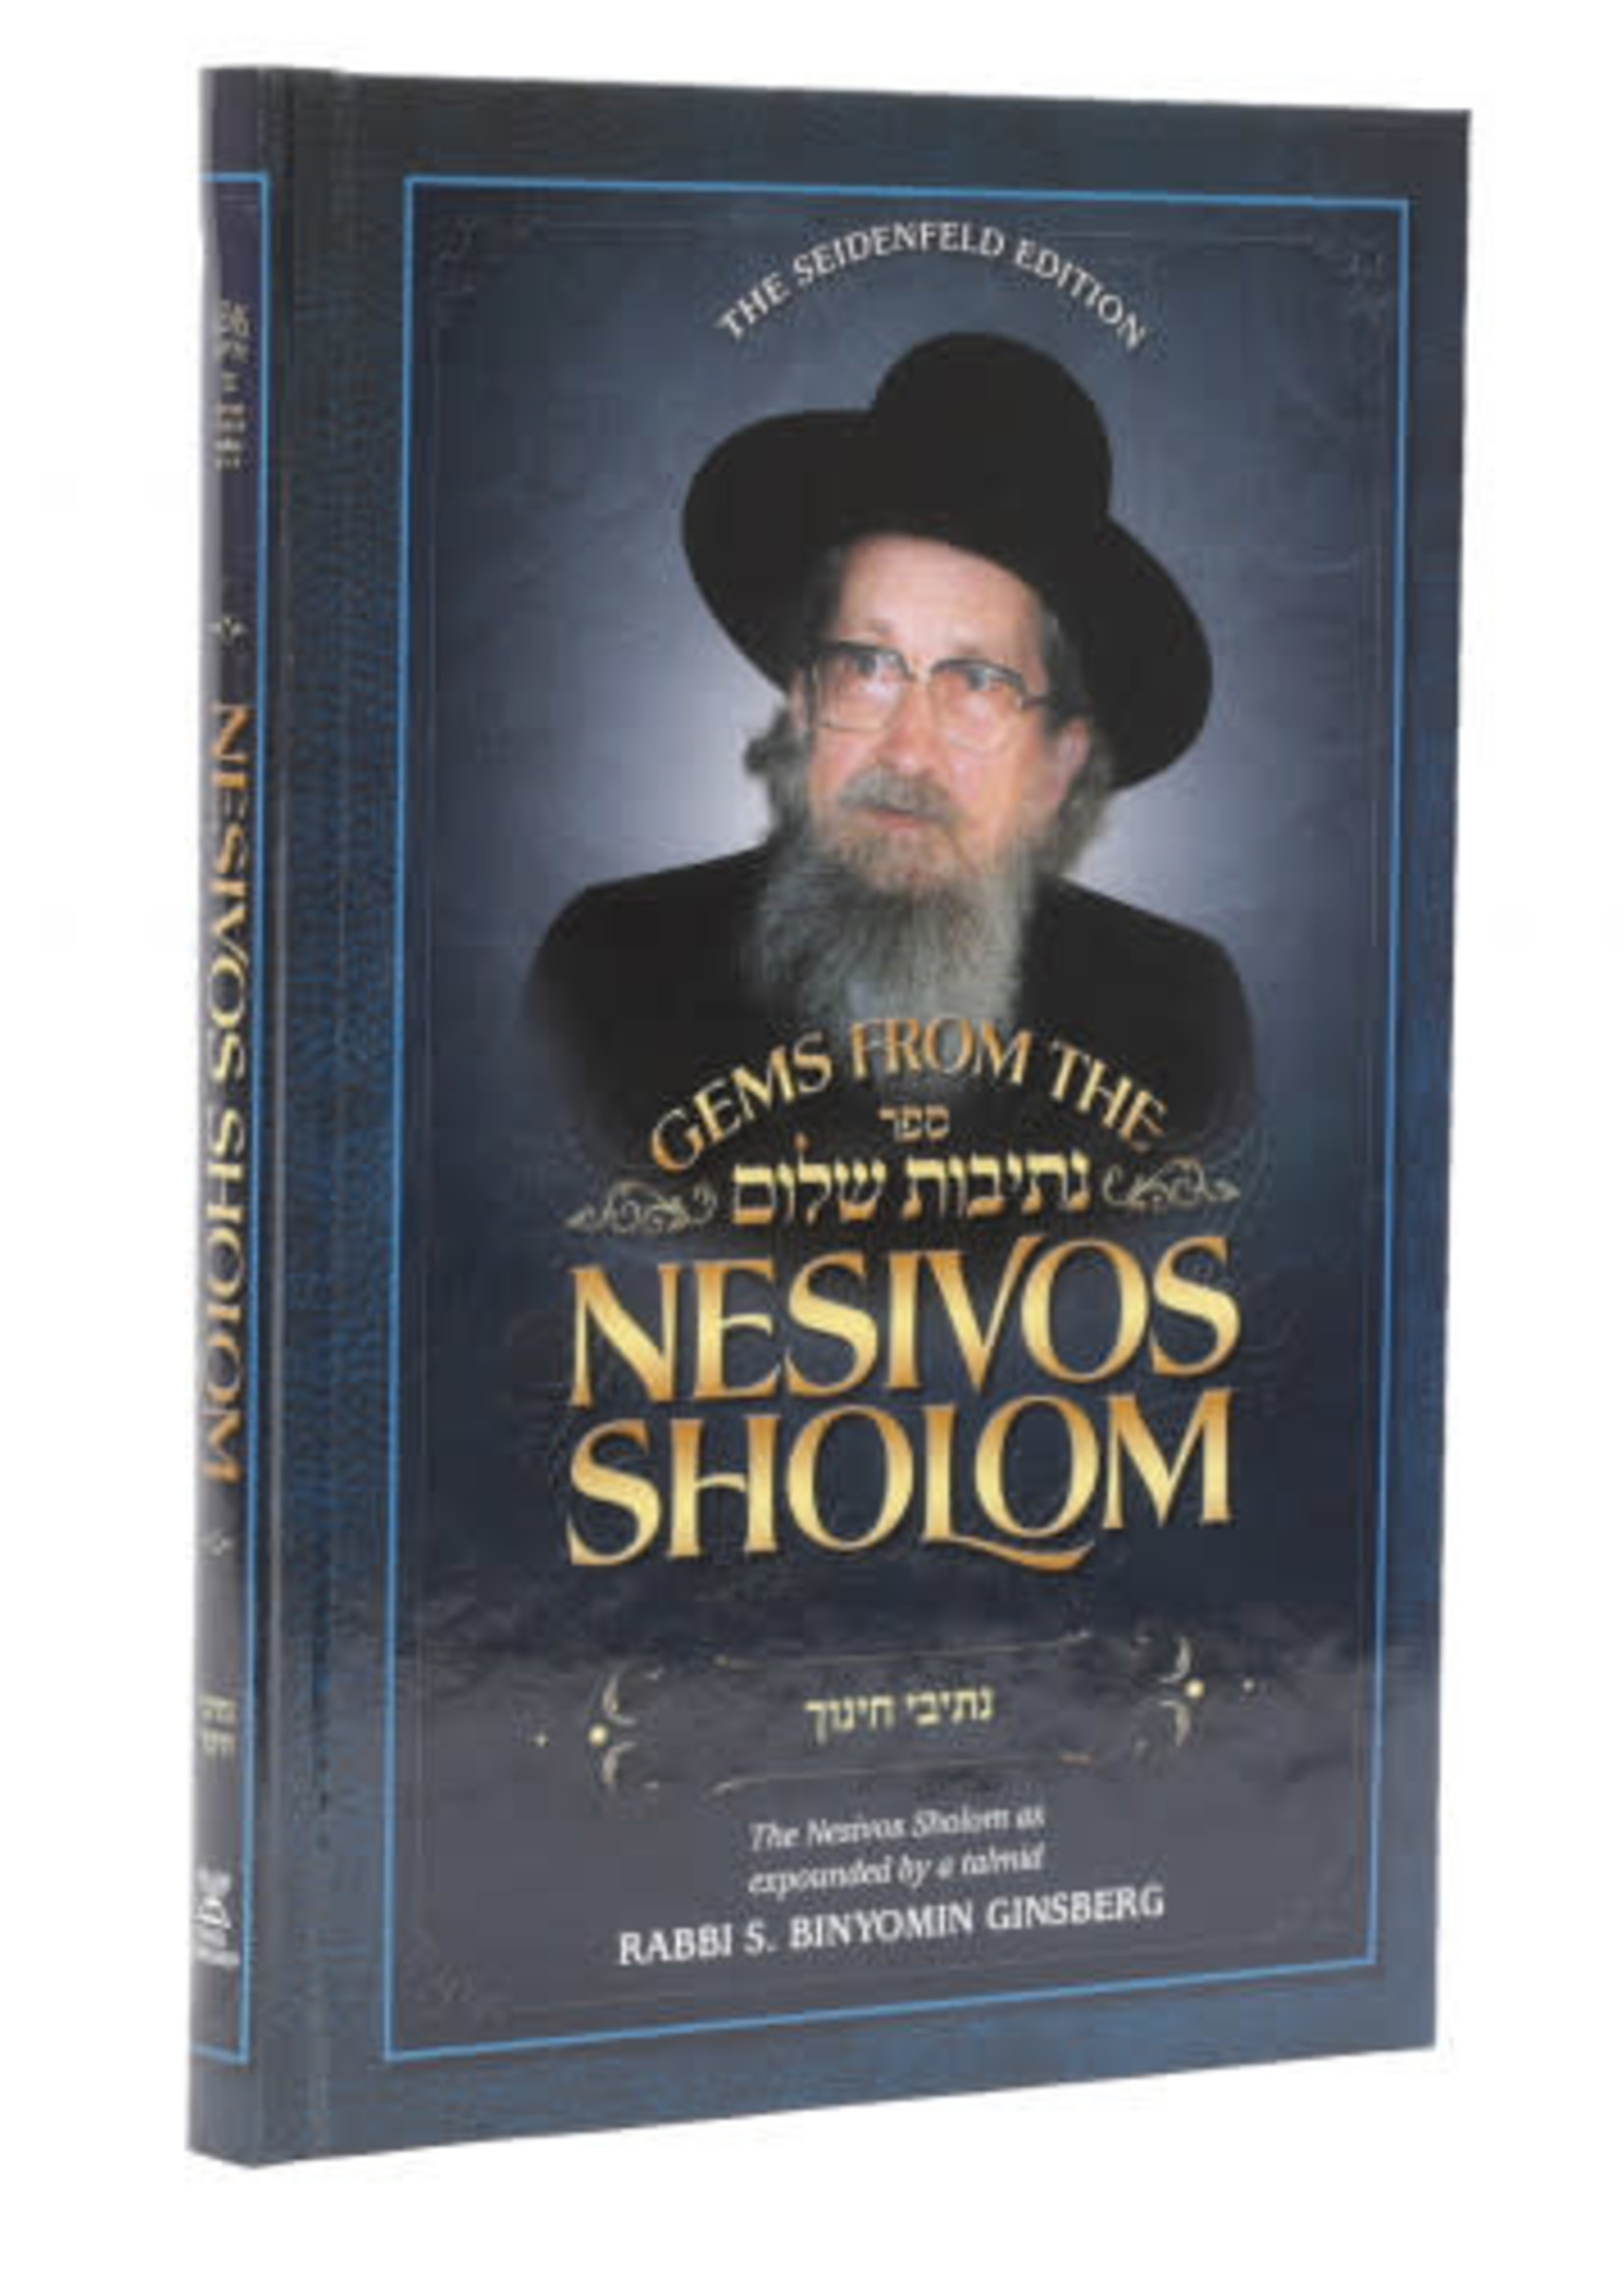 Gems From the Nesivos Sholom